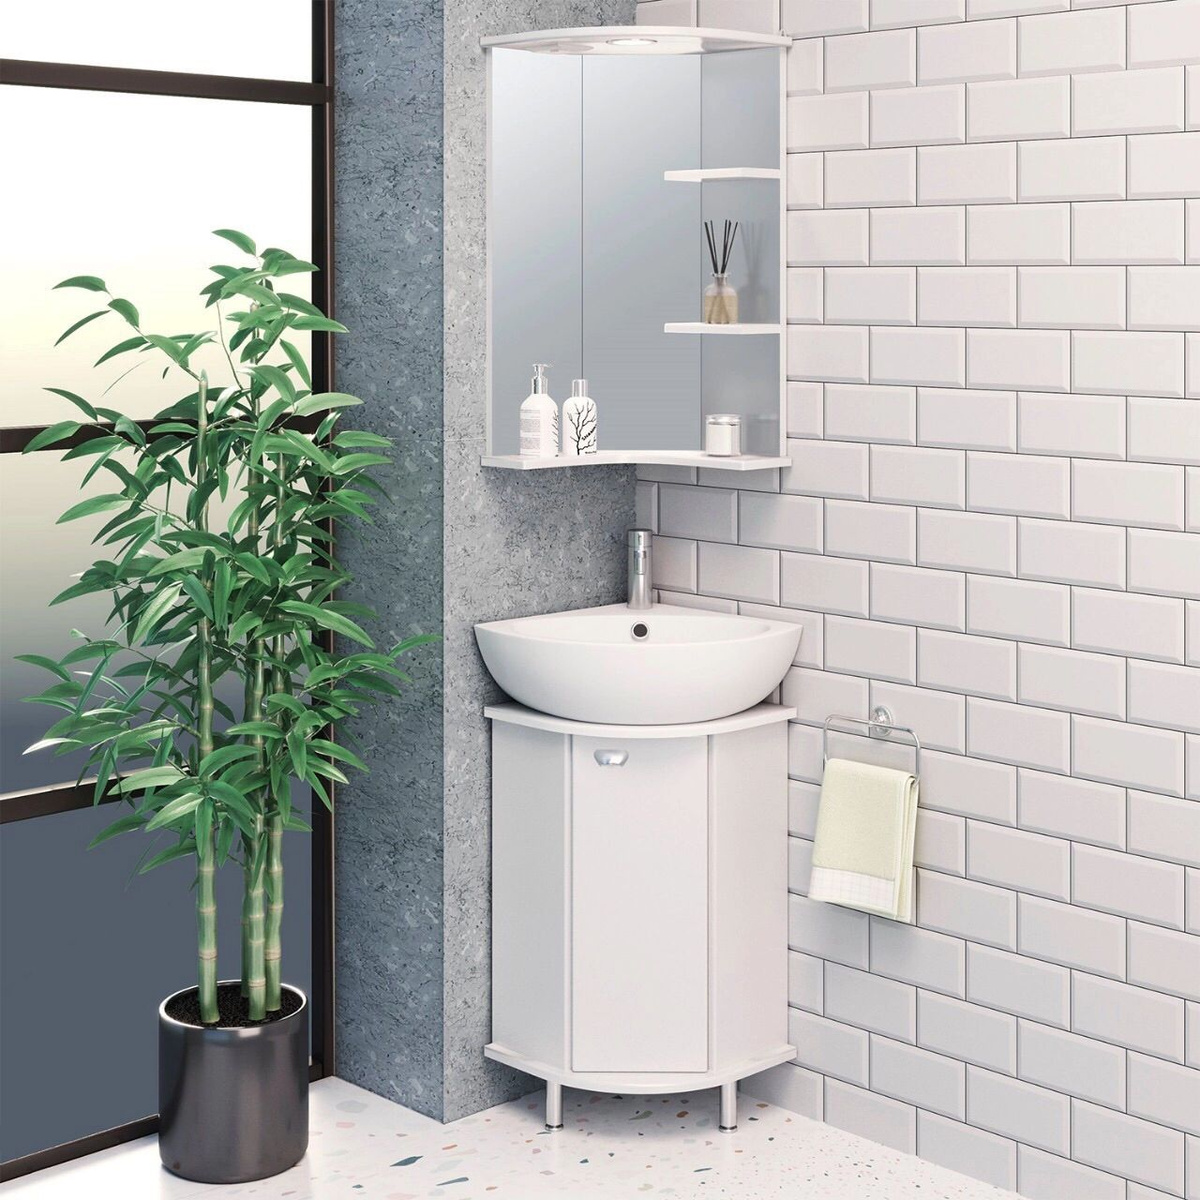 Мебель для ванной / Runo / Браво угловой / тумба с раковиной Элегия 46 / шкаф для ванной / зеркало для ванной